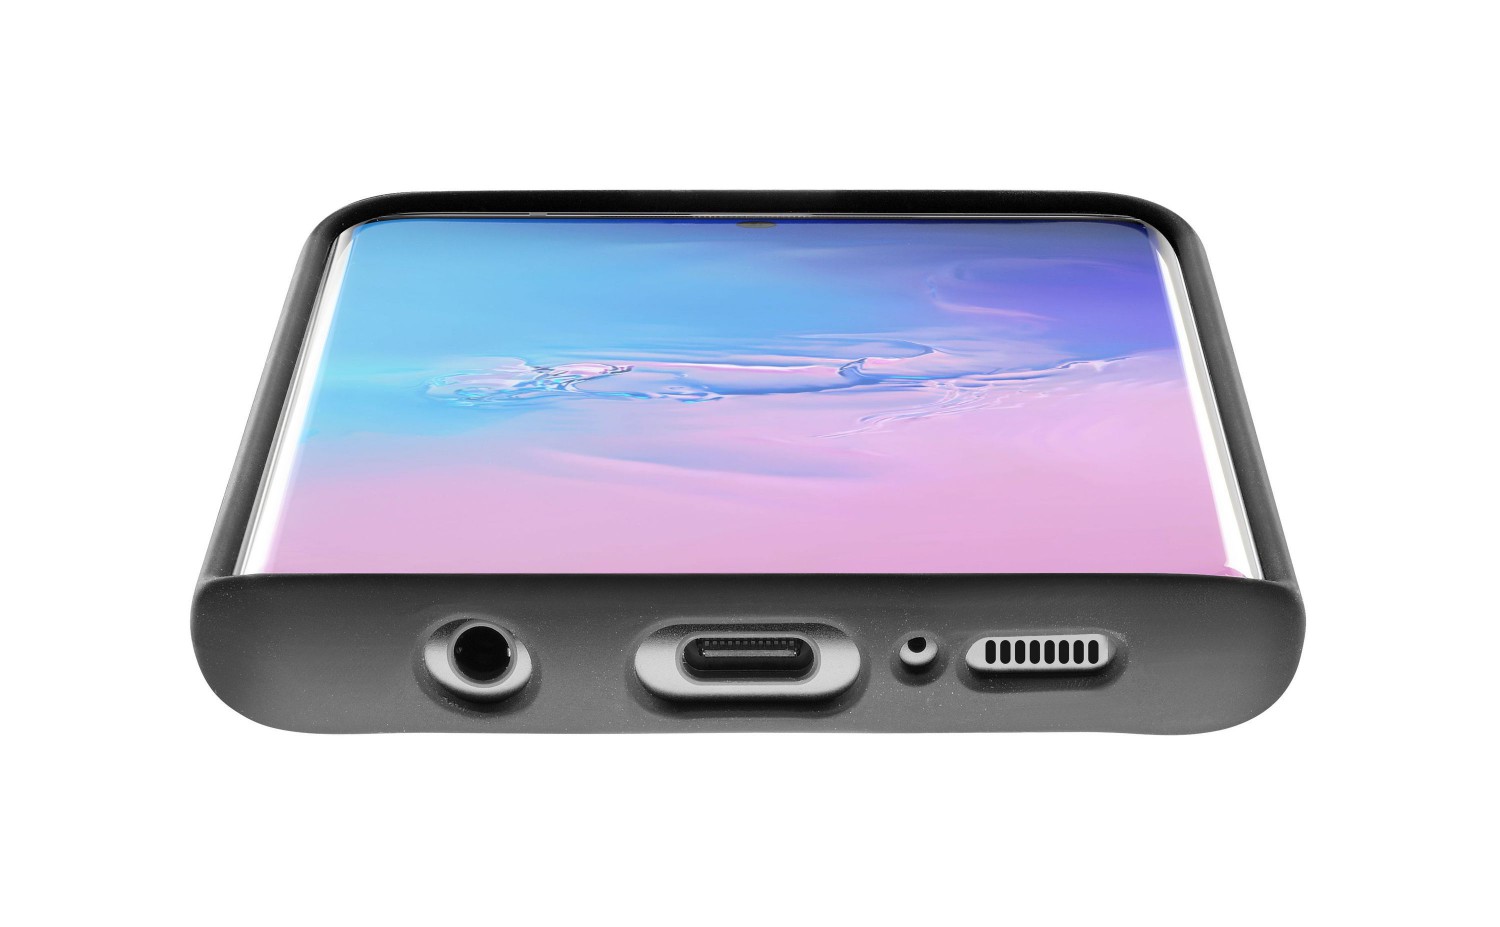 Ochranný silikonový kryt Cellularline Sensation pro Samsung Galaxy S20 Ultra, černý